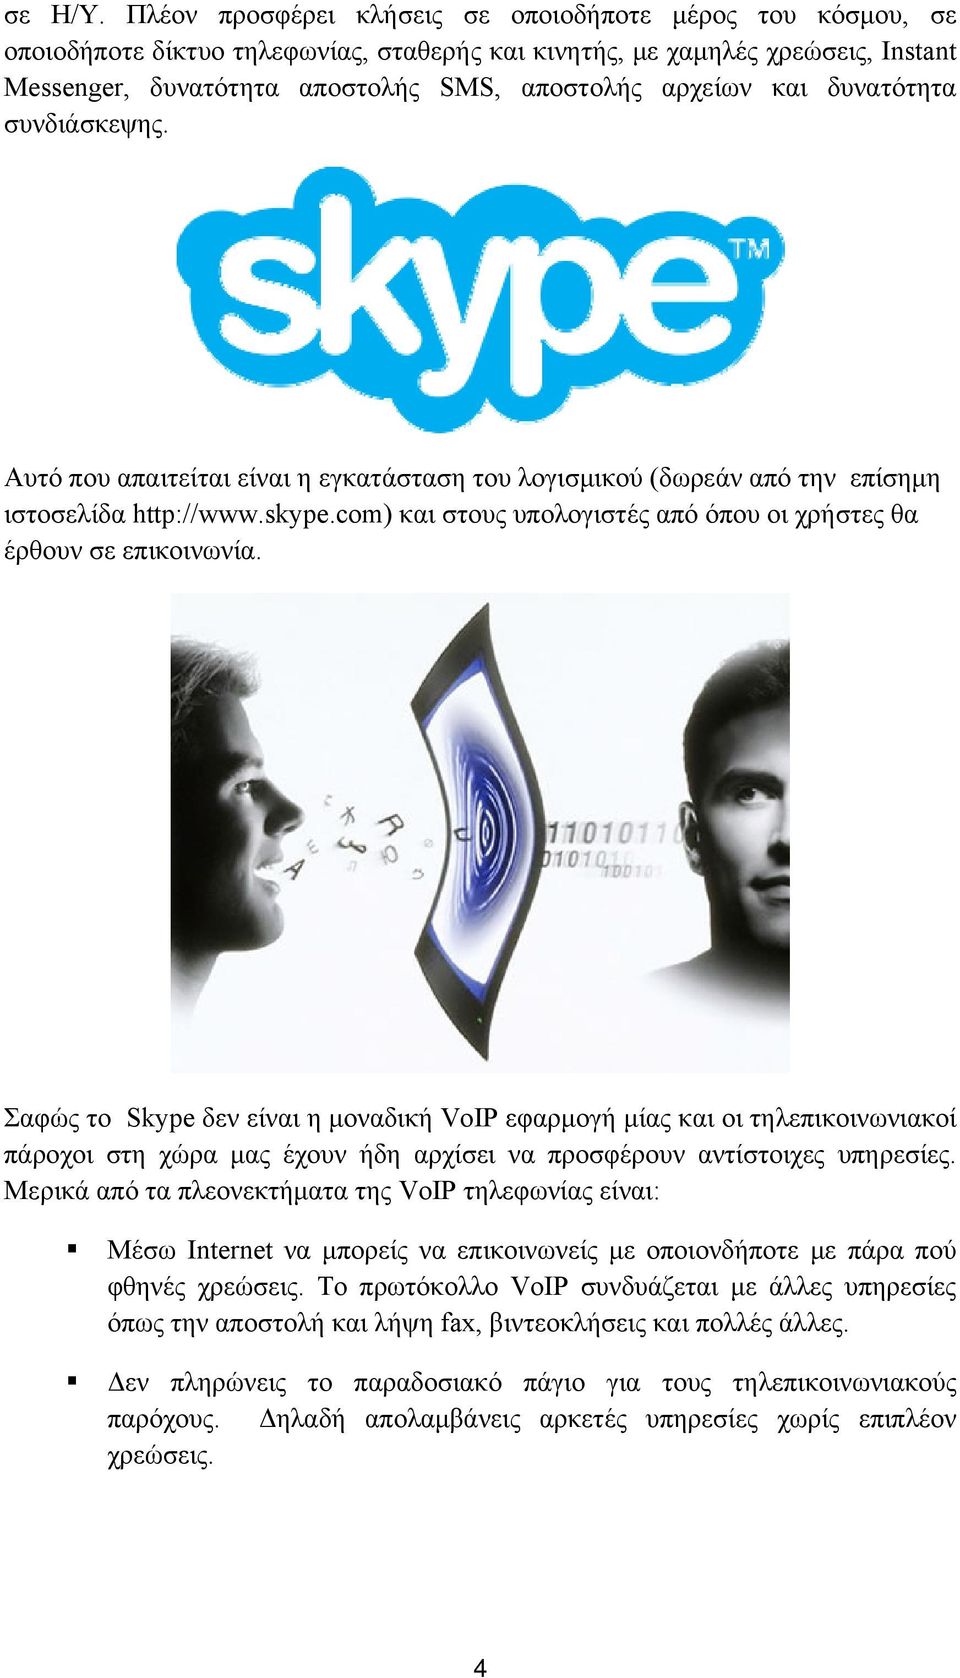 και δυνατότητα συνδιάσκεψης. Αυτό που απαιτείται είναι η εγκατάσταση του λογισμικού (δωρεάν από την επίσημη ιστοσελίδα http://www.skype.